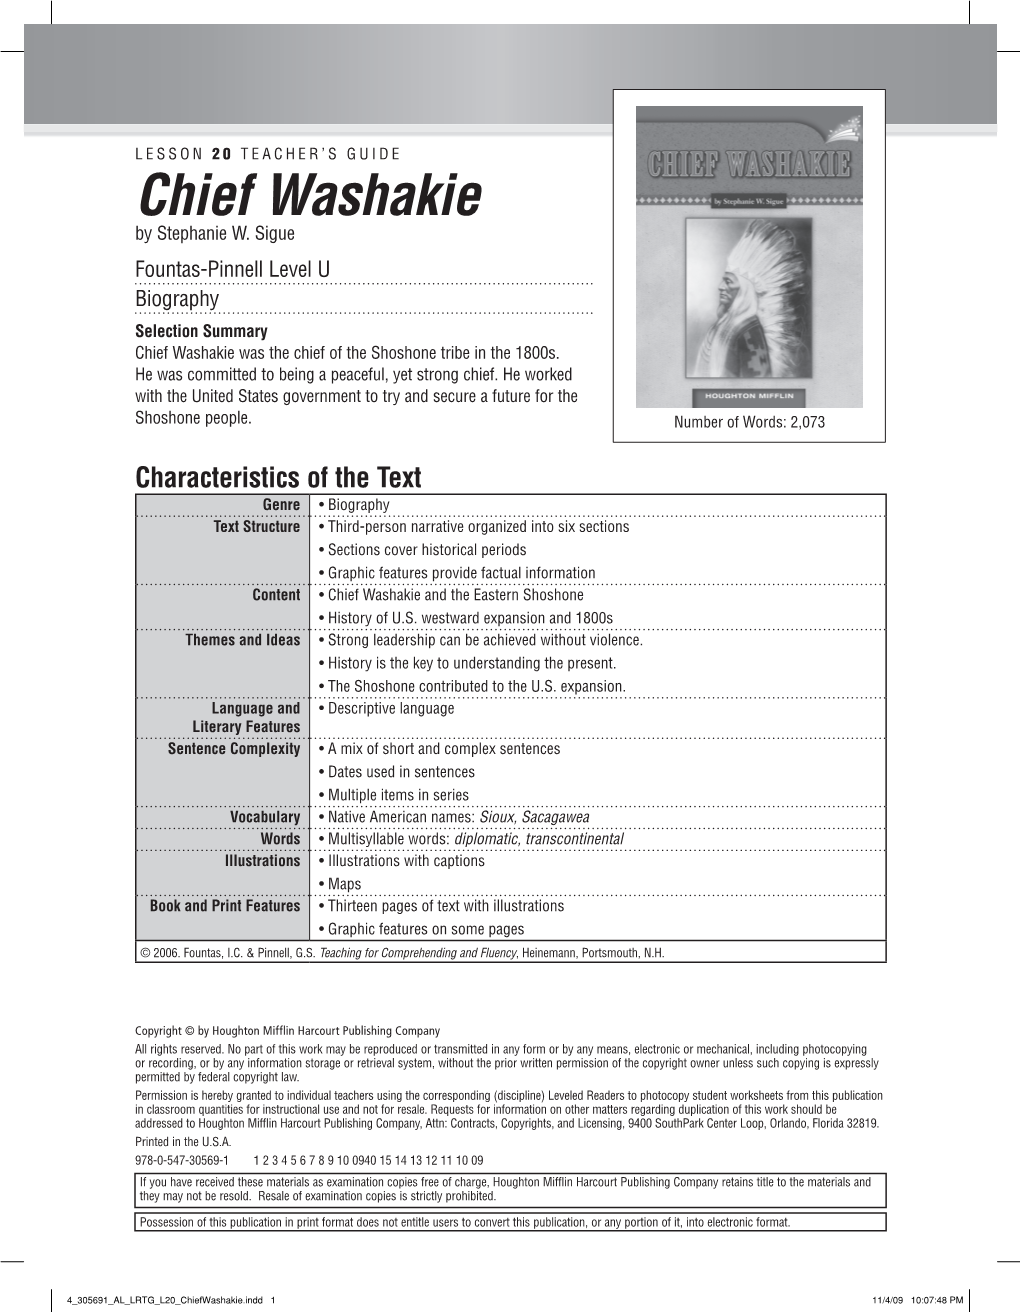 Chief Washakie by Stephanie W